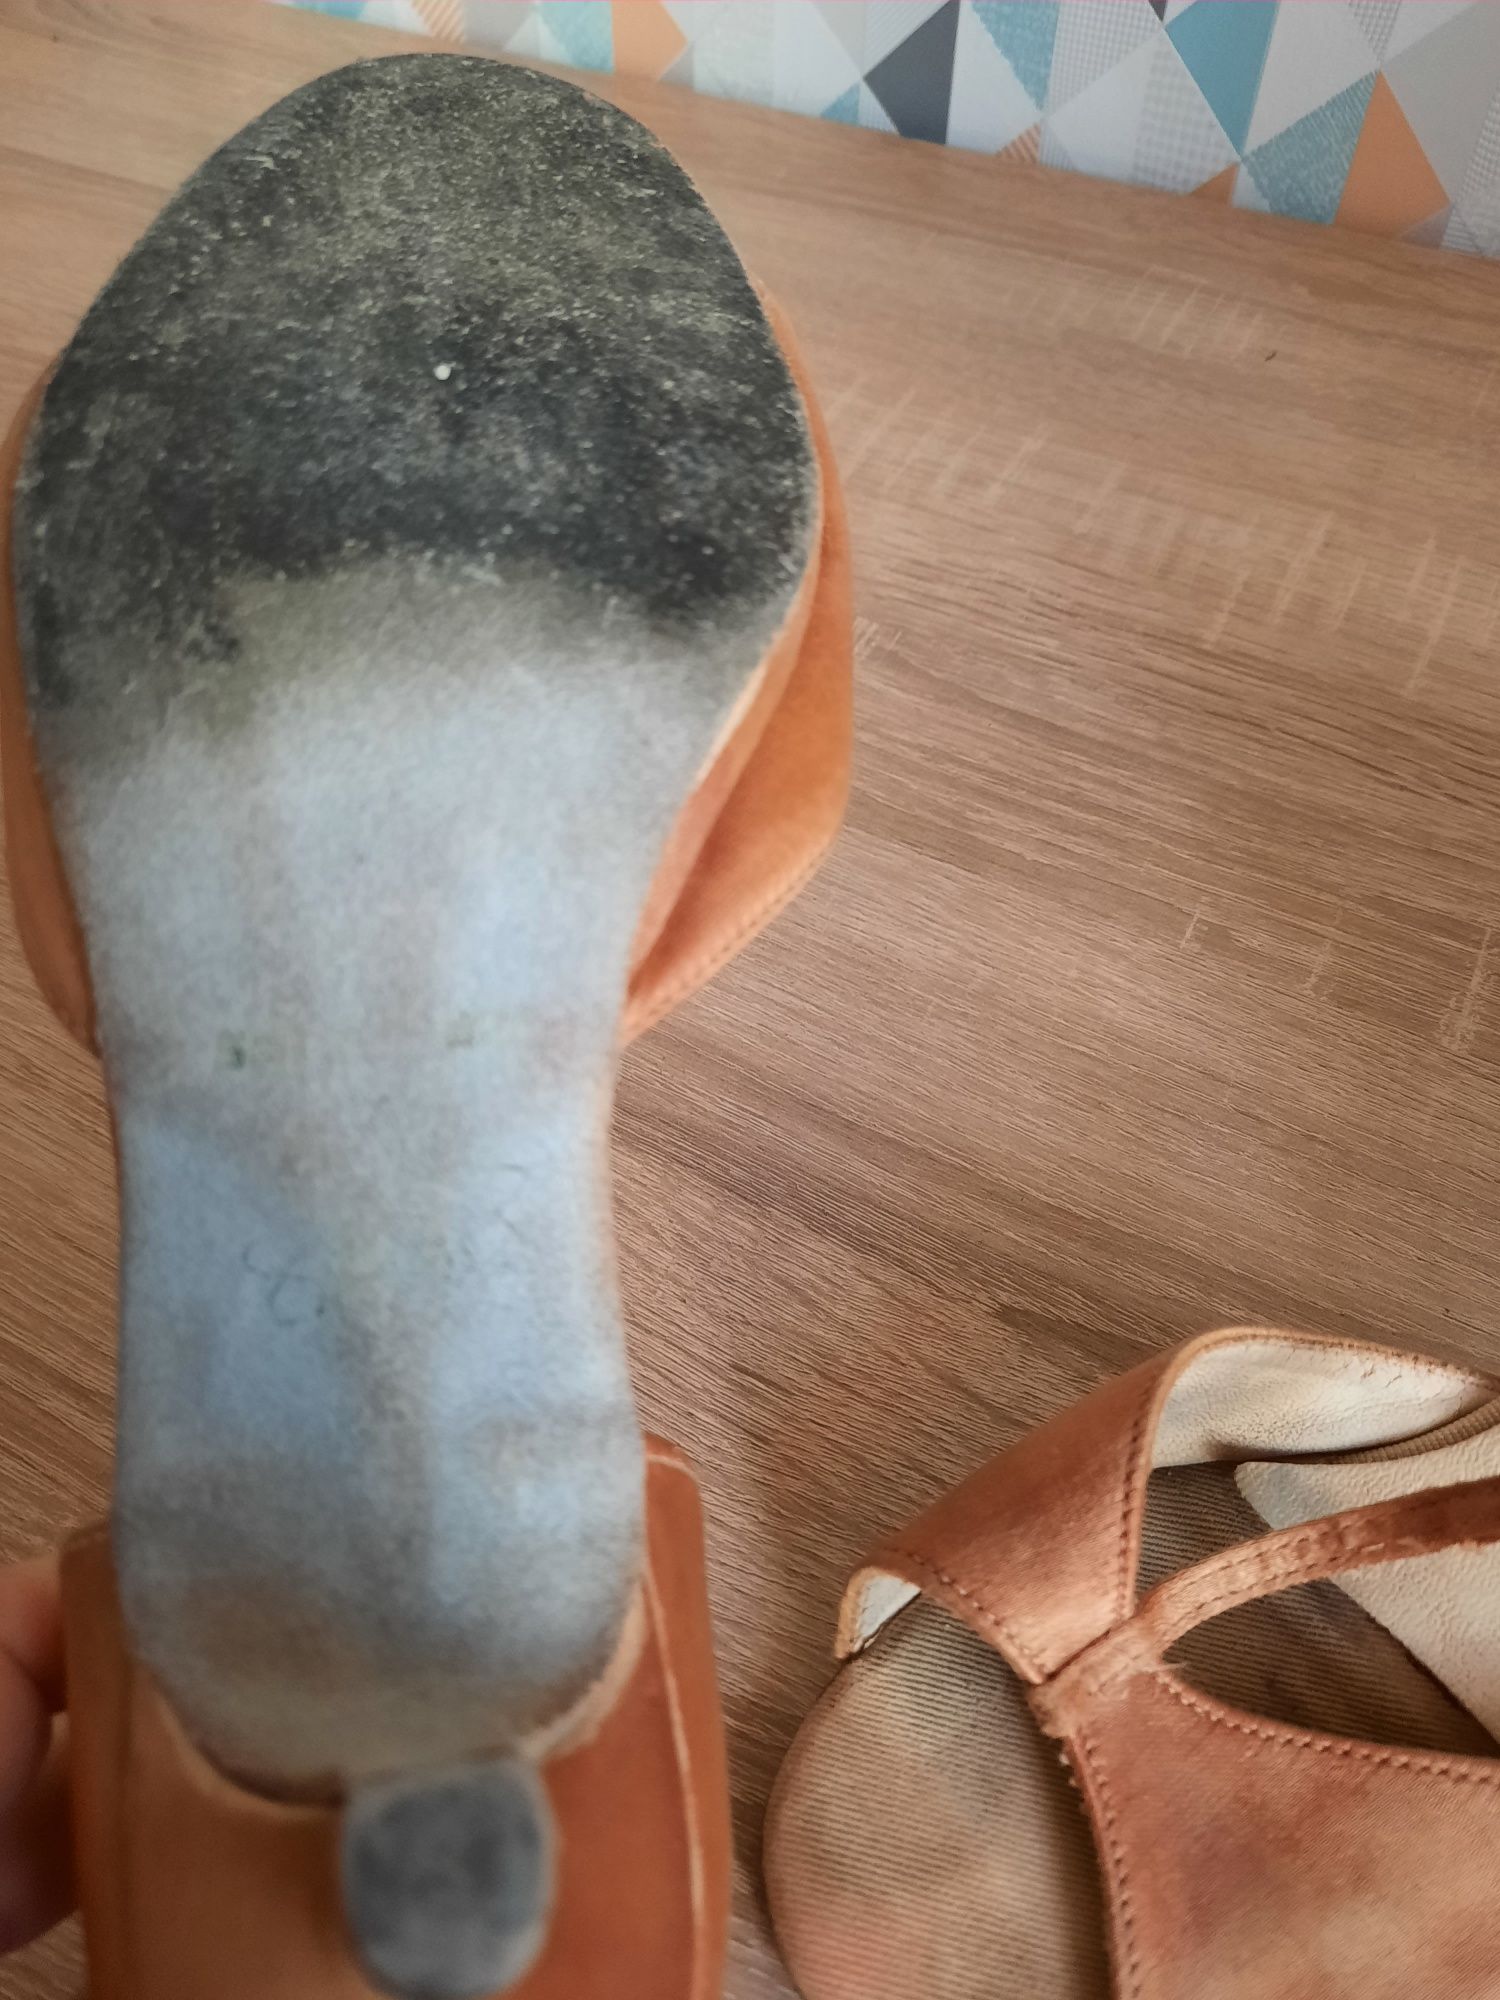 Женские танцевальные туфли р.37 сатин